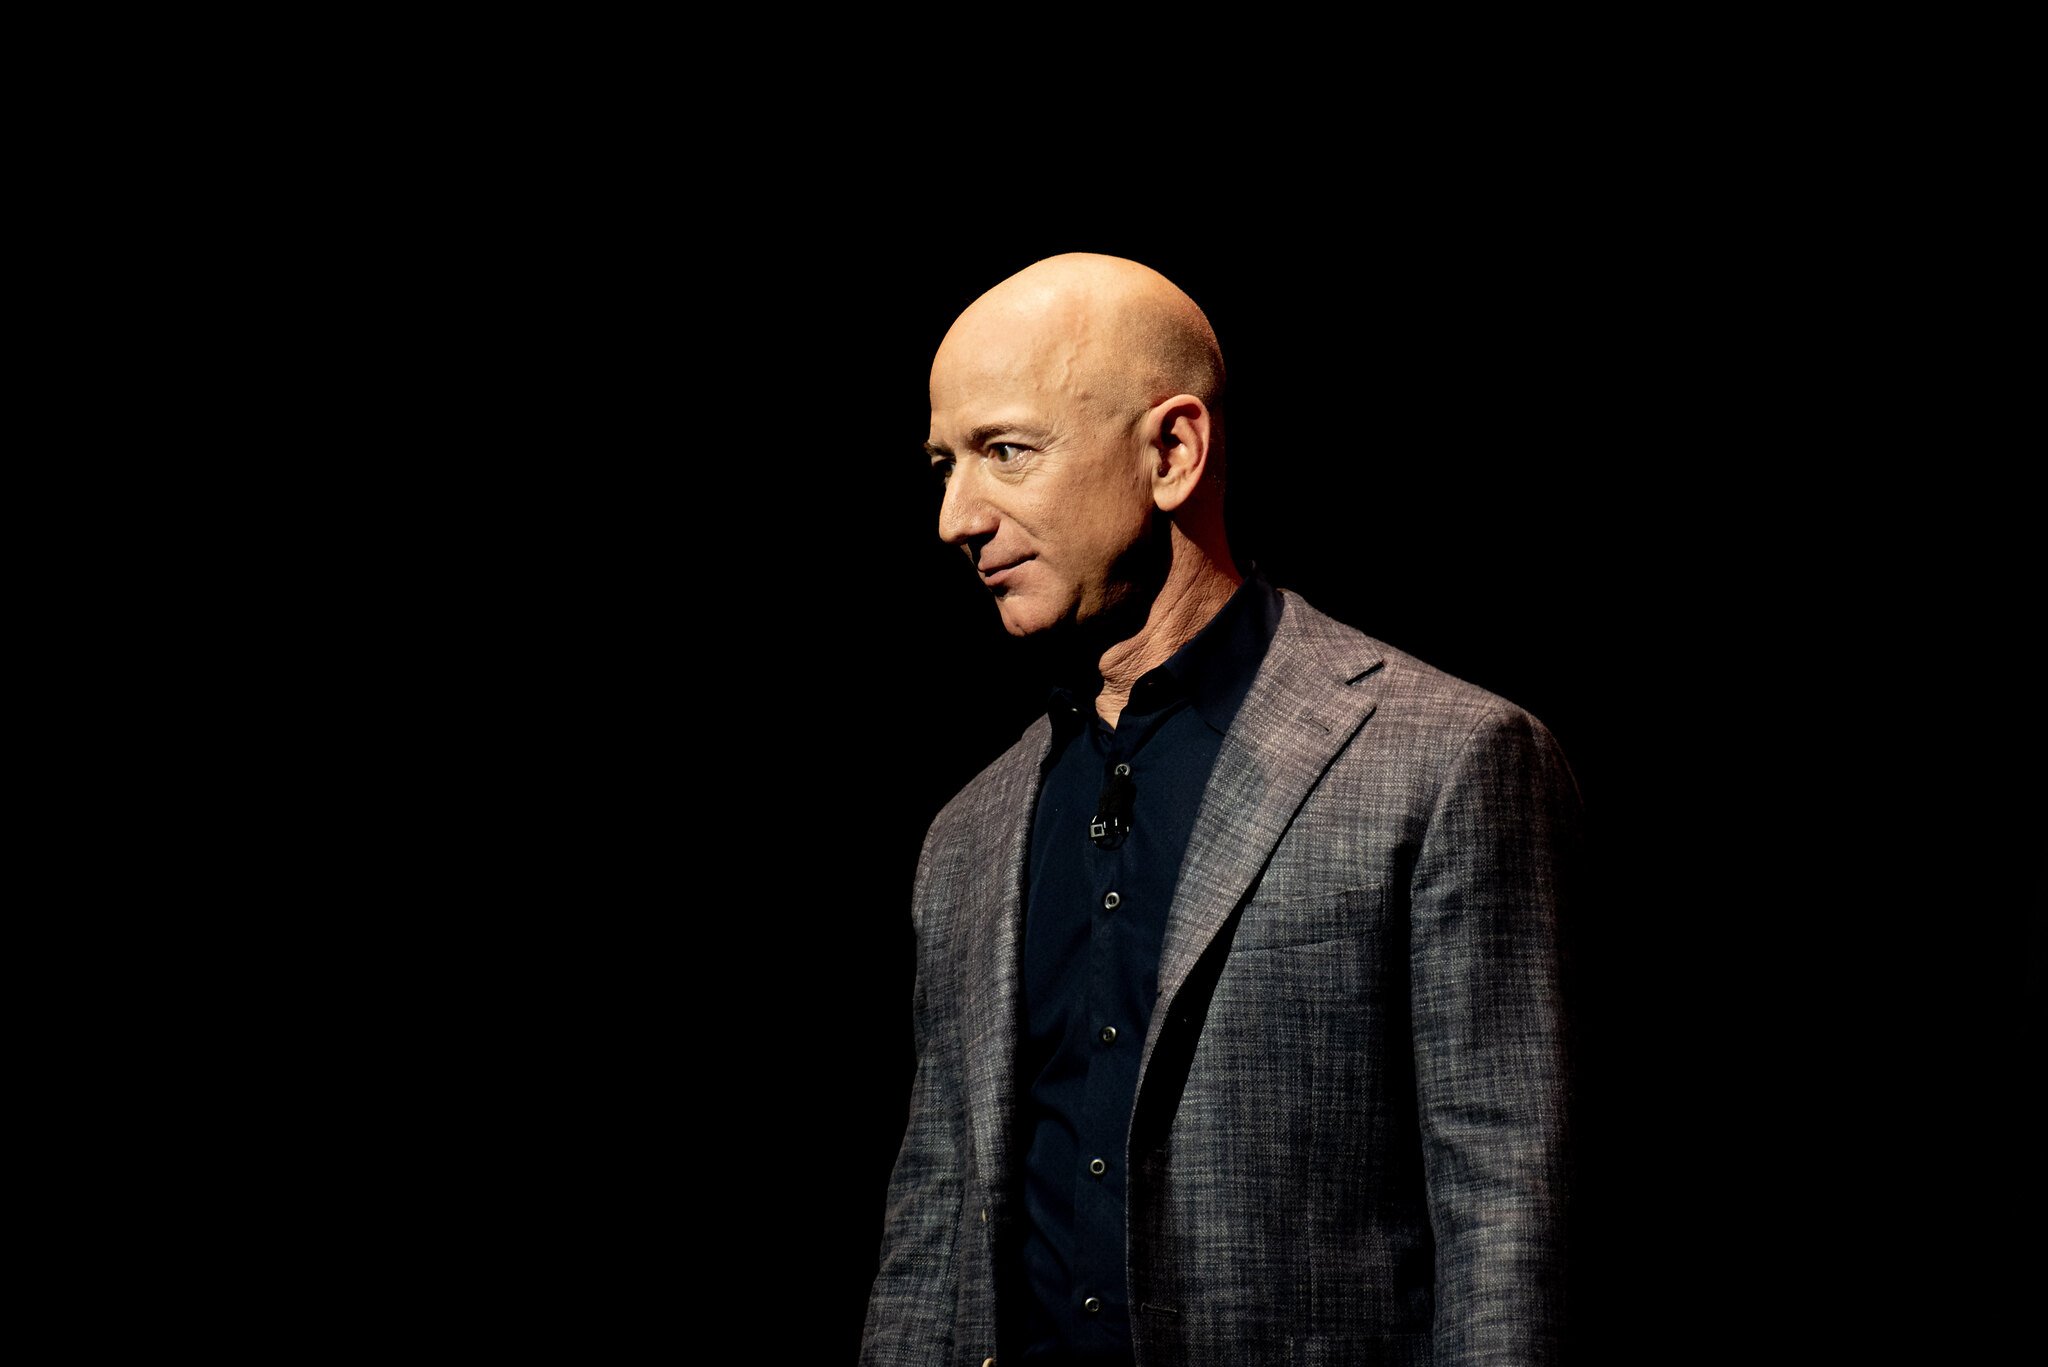 Bezos parece conformado com a decisão judicial contrária à Blue Origin. (Fonte: Flickr/Daniel Oberhaus/Reprodução)